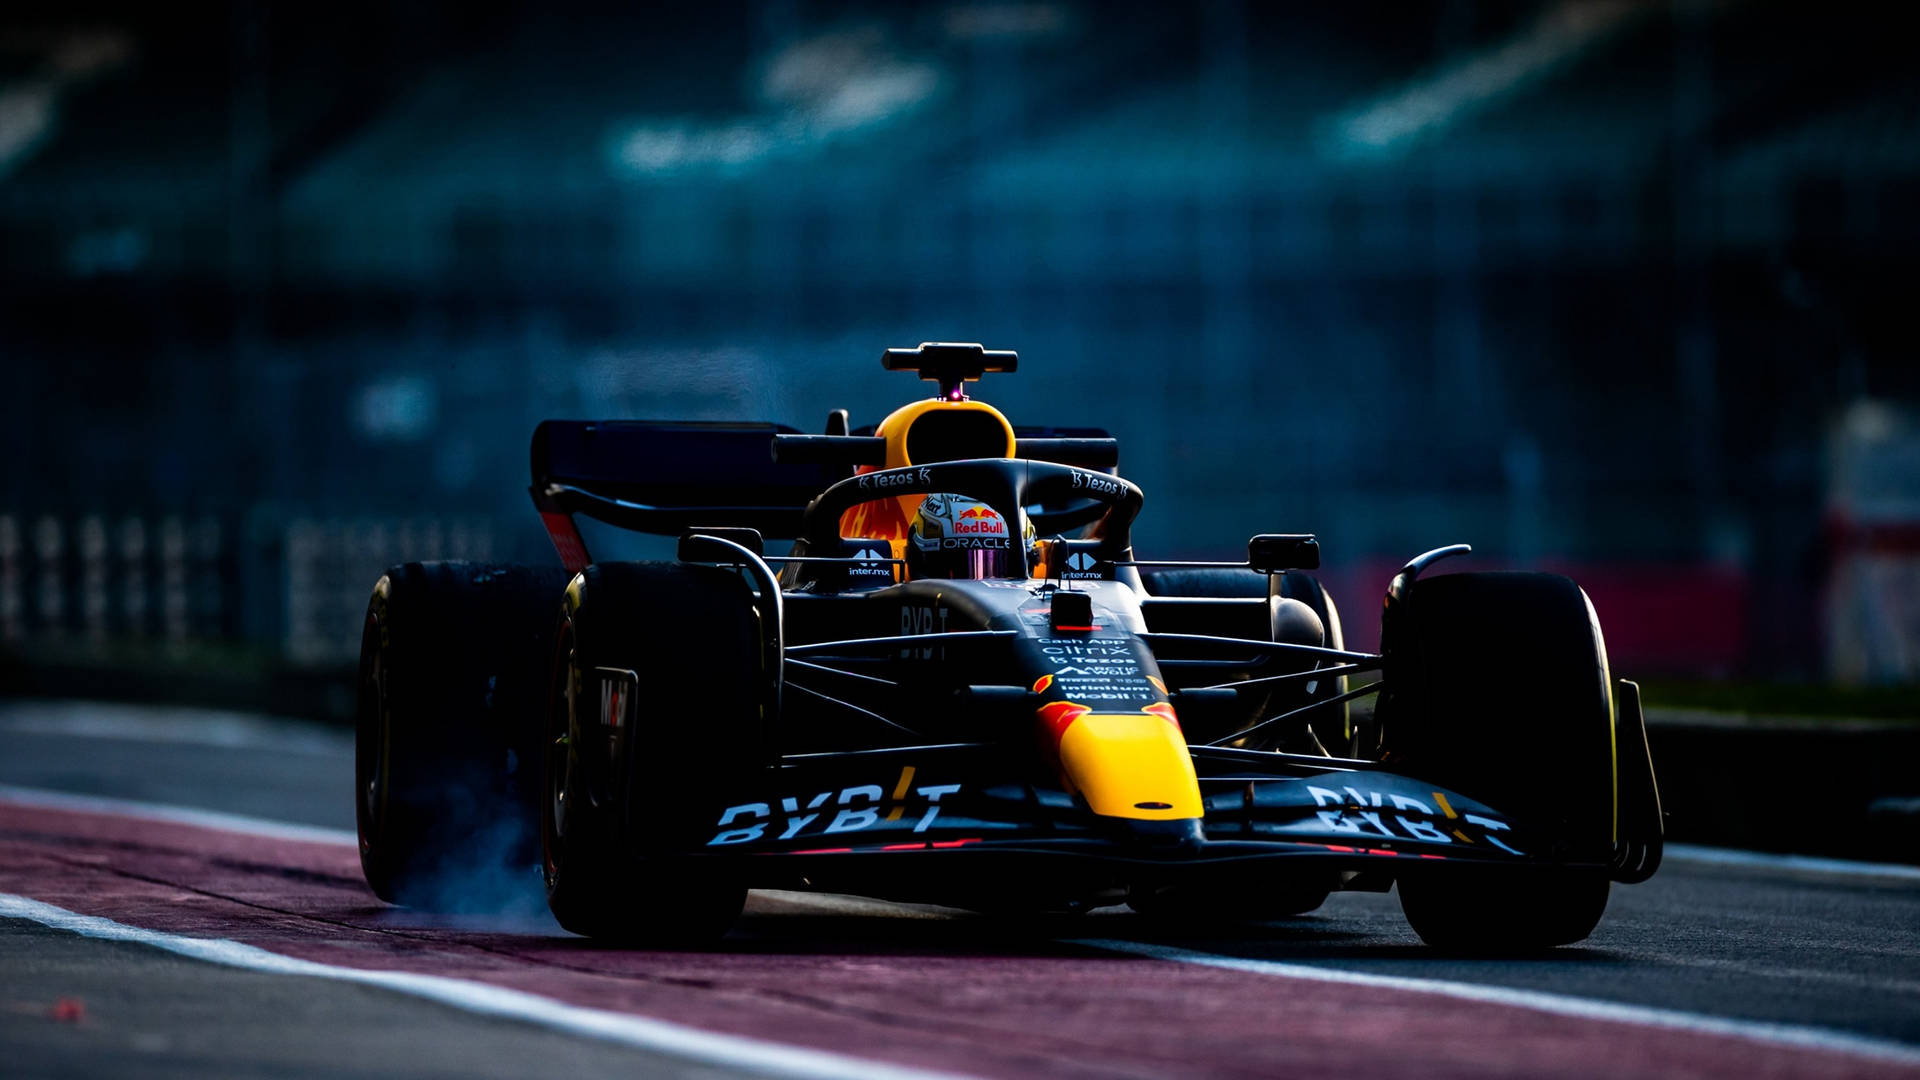 Hastighed sejrer i kampen om at nå målstregen i Formel 1. Wallpaper